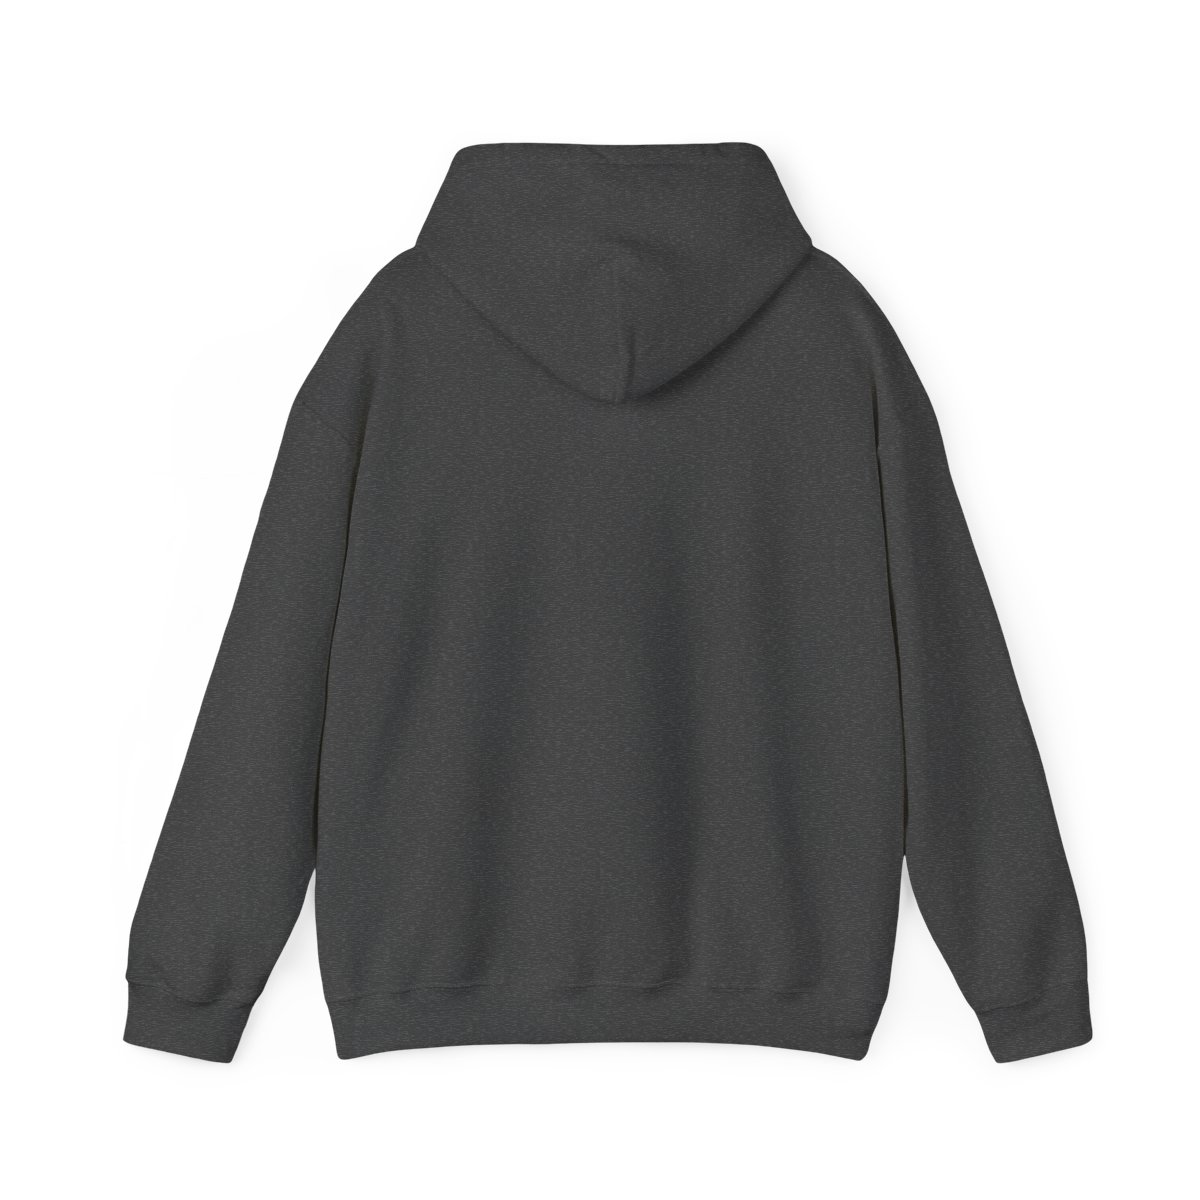 Unisex #Weatherproof Hooded Sweatshirt product thumbnail image